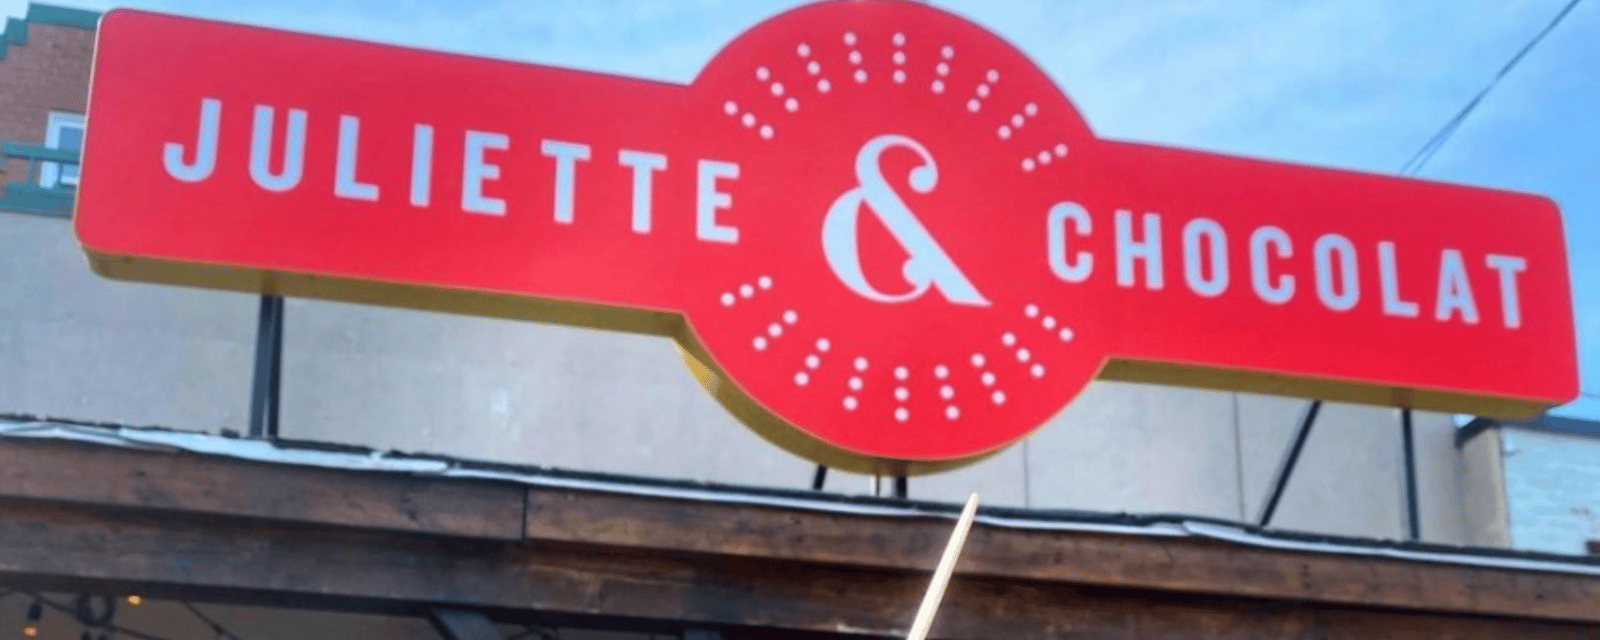 C'est le grand retour des restaurants Juliette & Chocolat